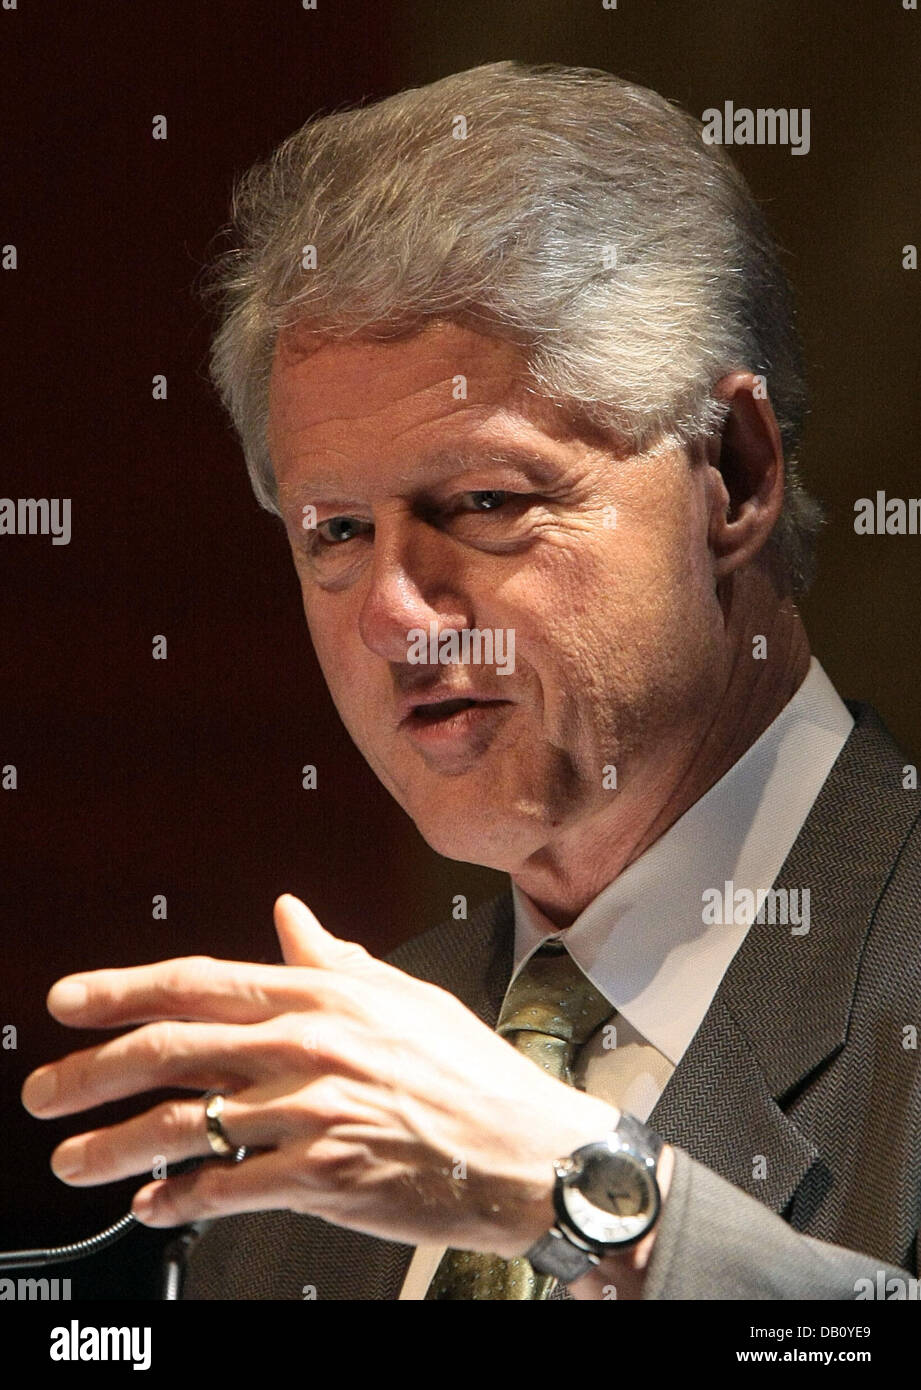 Ehemalige US Präsident Bill Clinton hält eine Ansprache auf die Weltpolitik in Hamburg, Deutschland, 7. Oktober 2007. Clintons Rede behandelt Themen wie Terrorismus um Umweltfragen. Foto: Ulrich Perrey Stockfoto